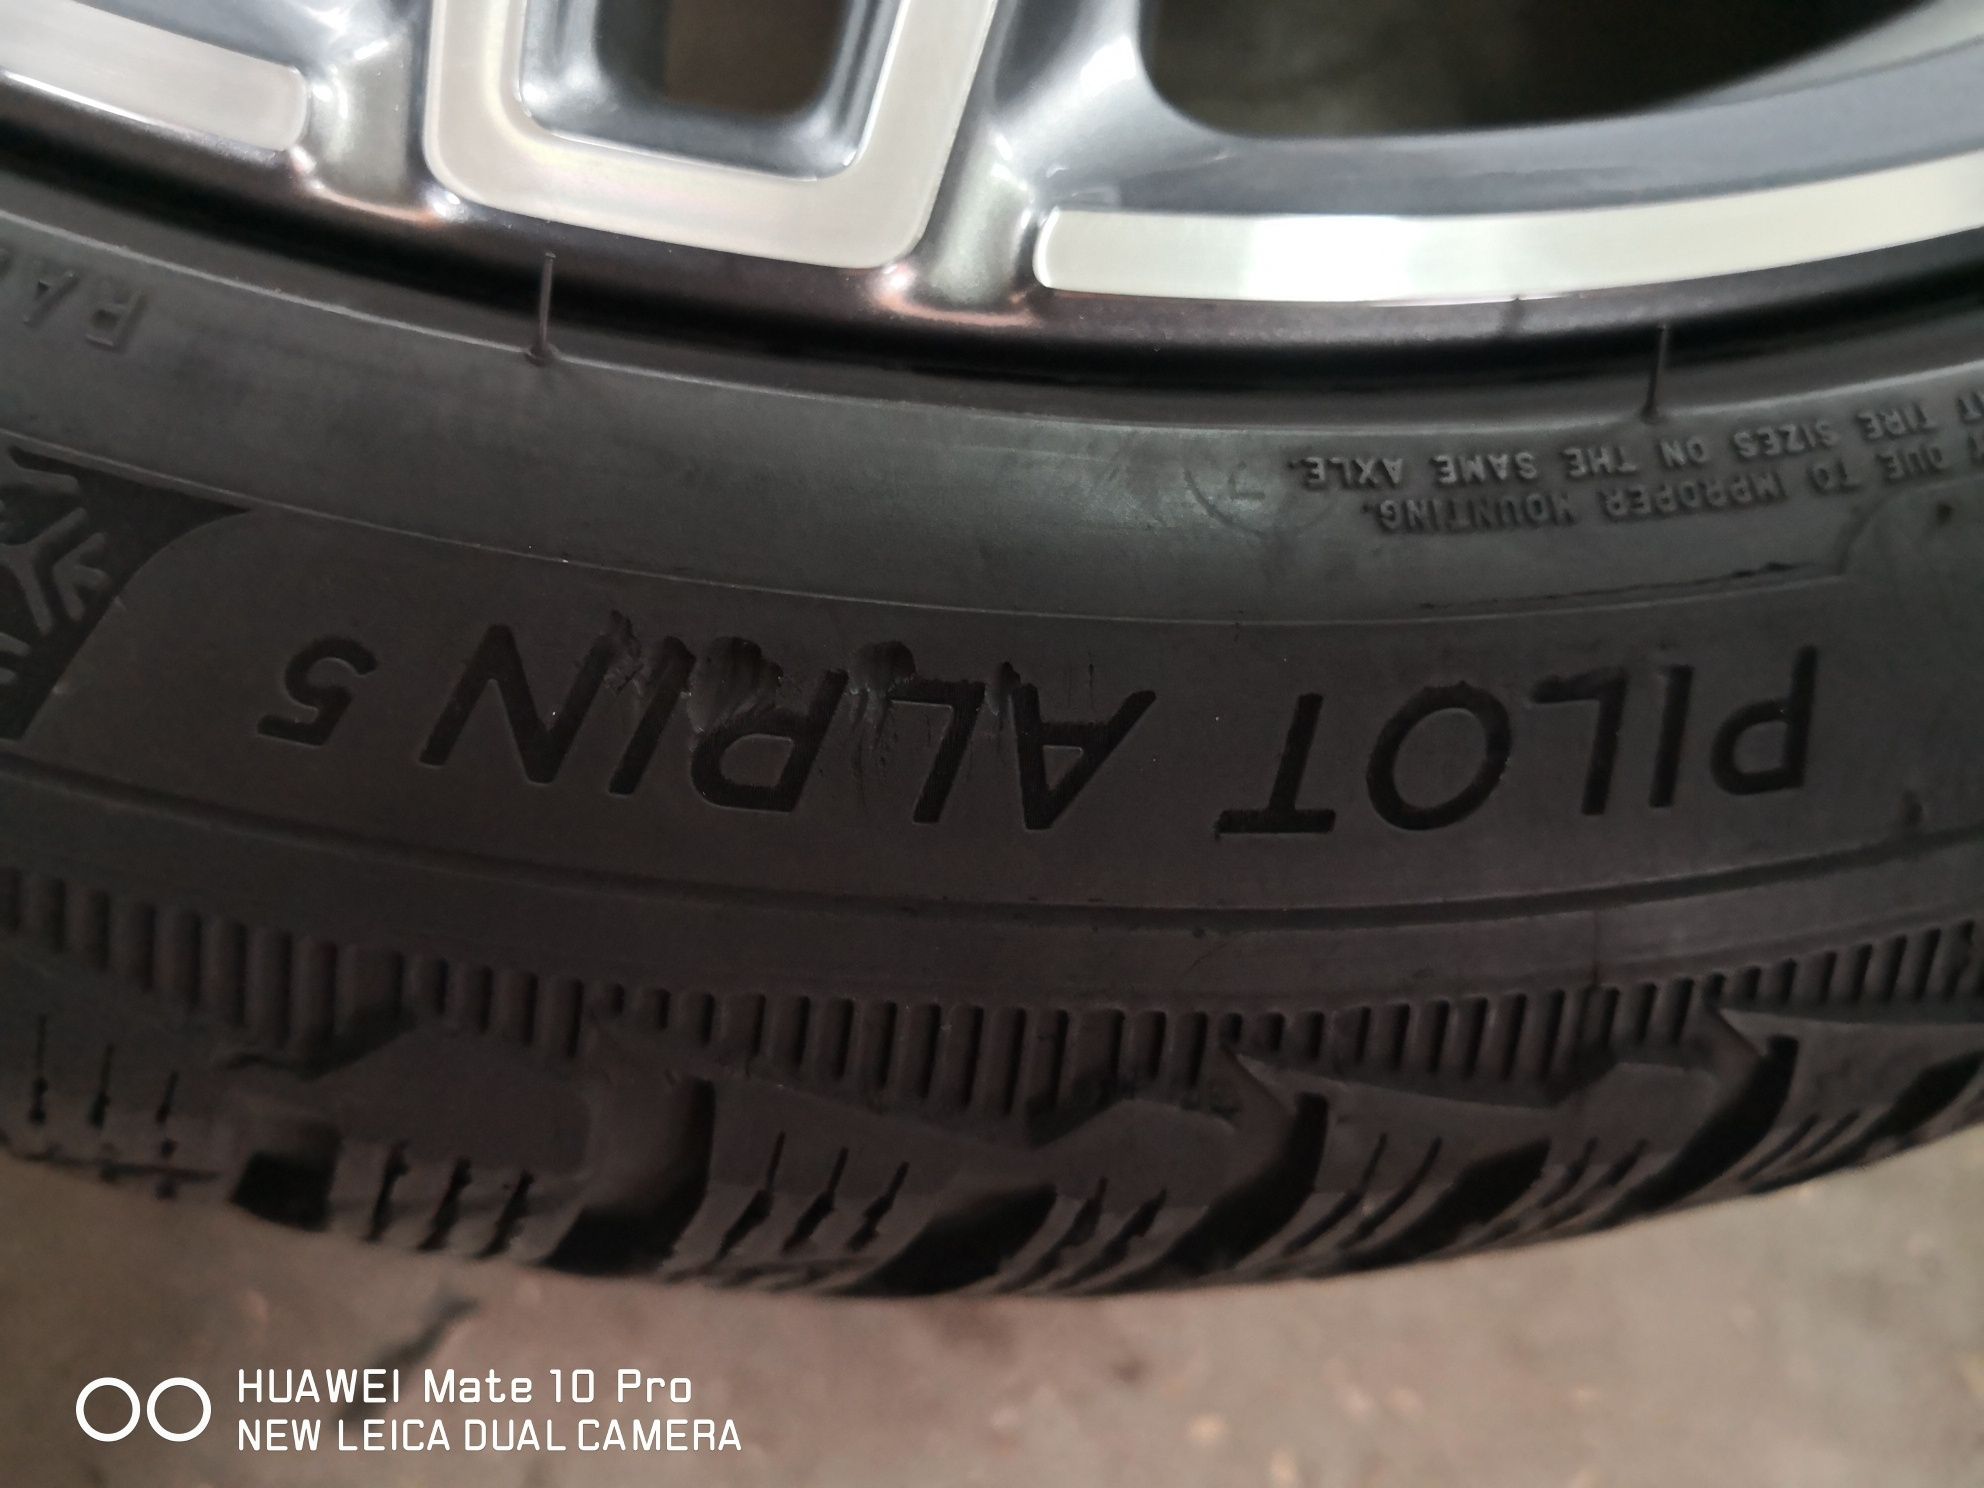 245 40 19 цола гуми като нови Michelin